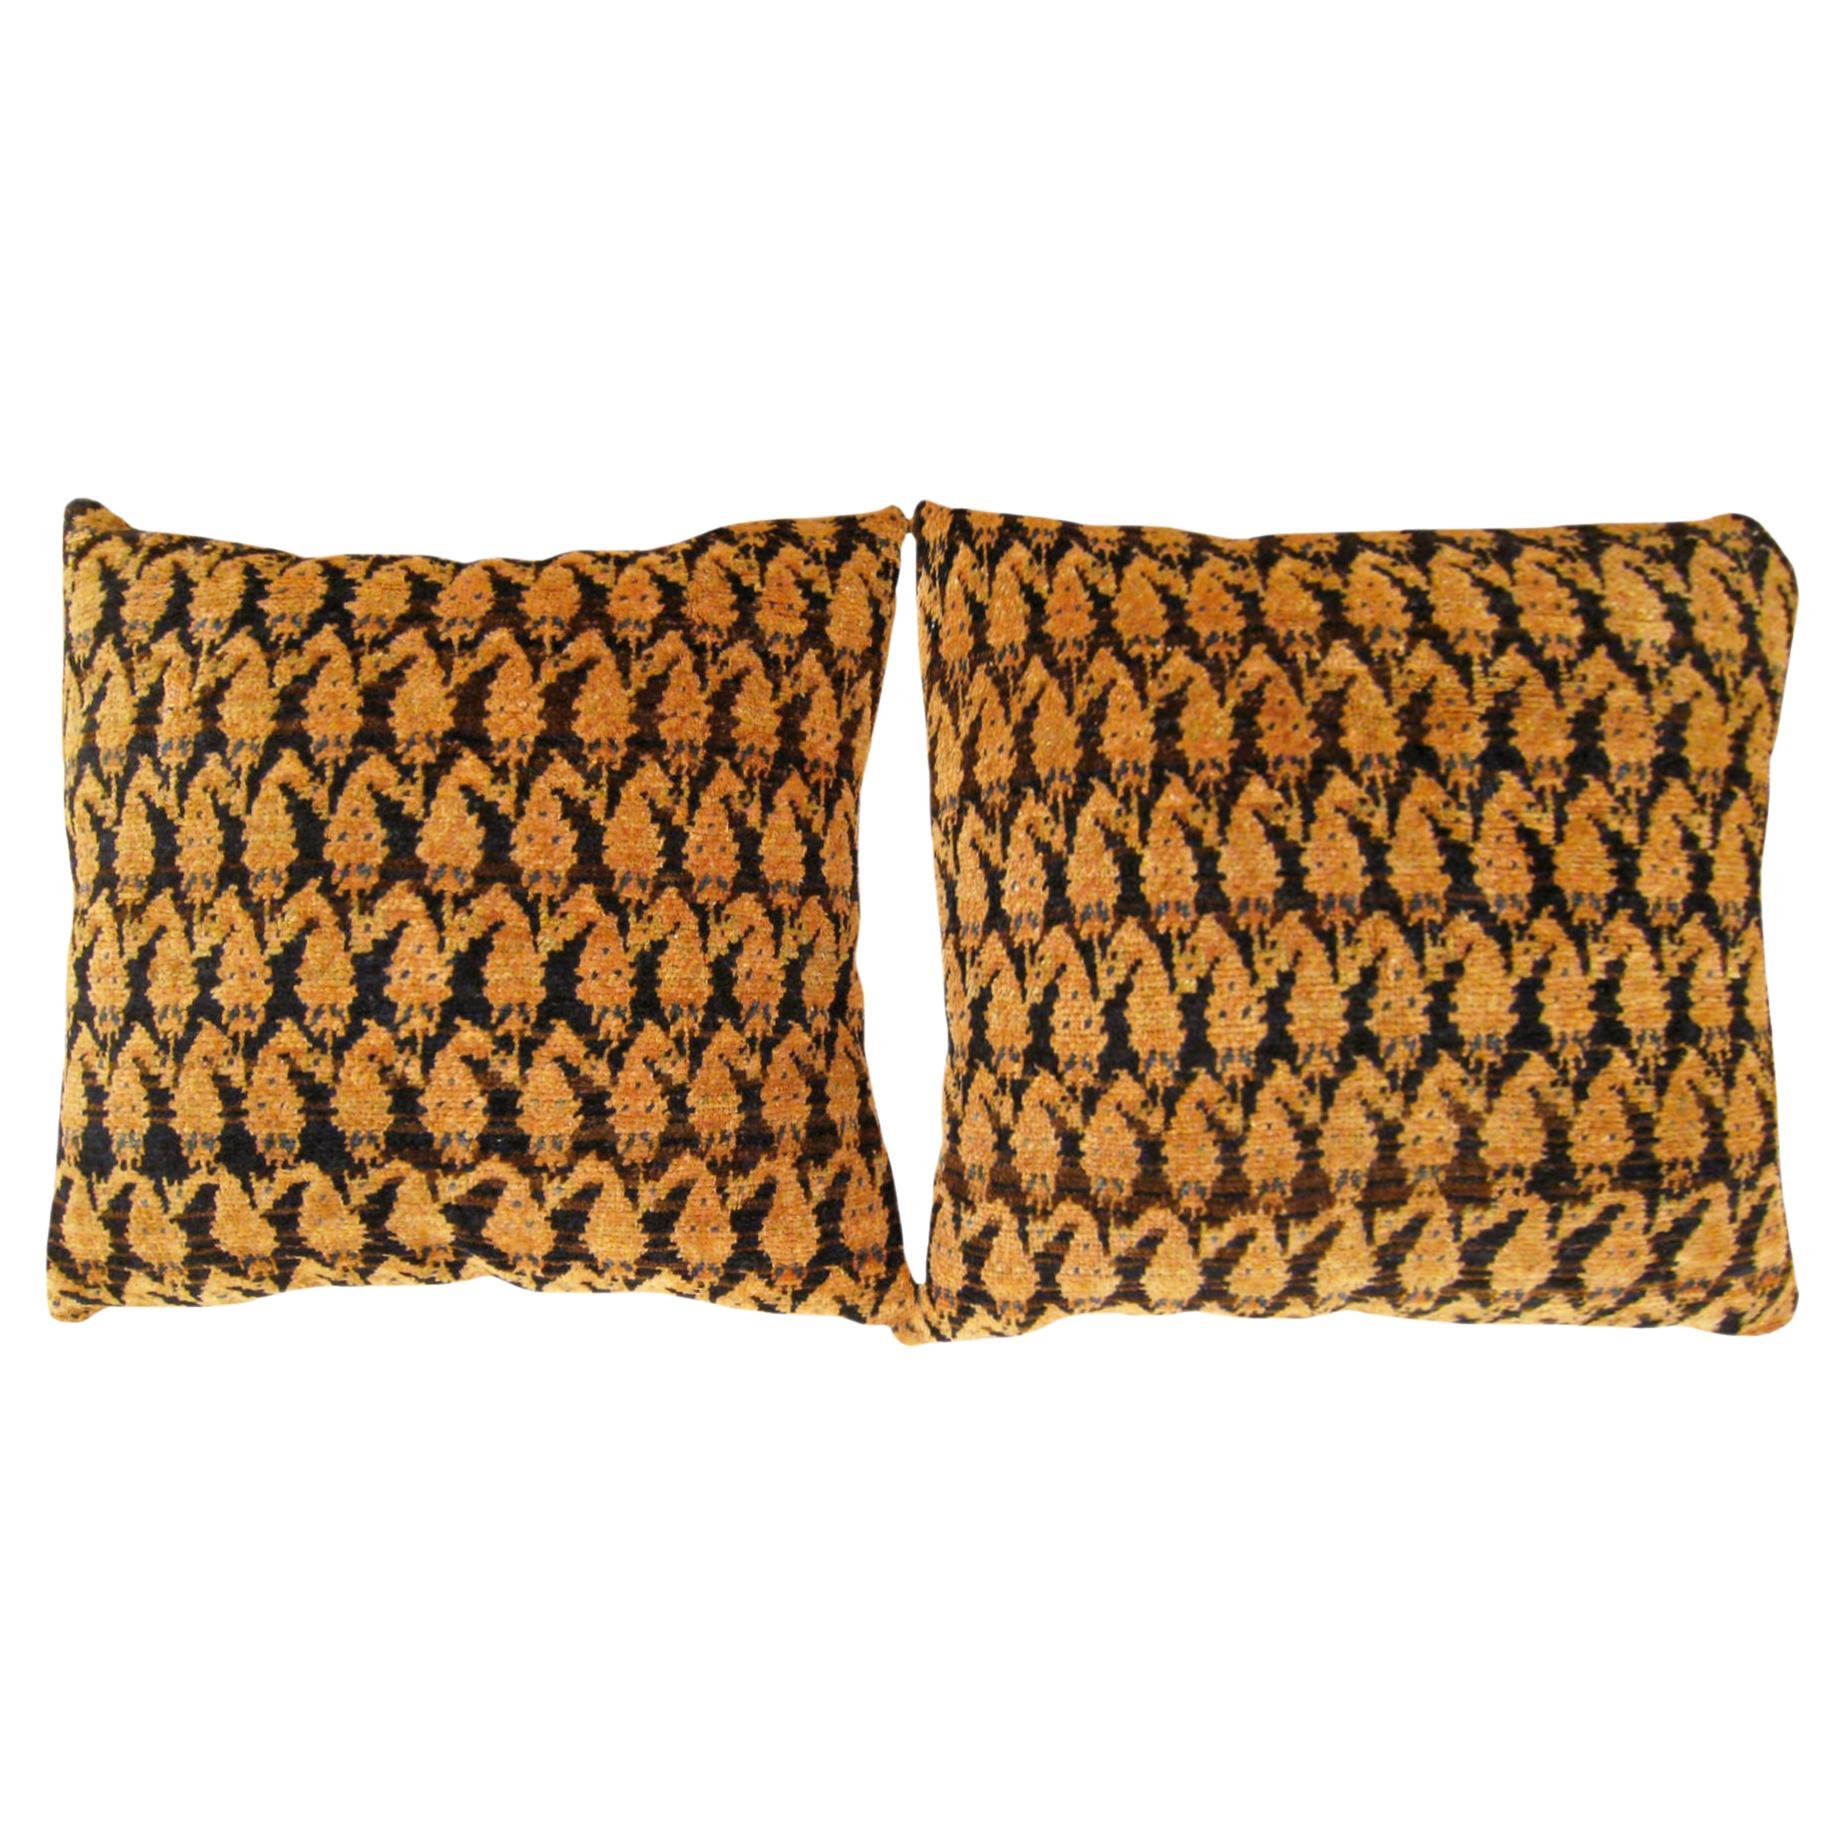 Pair of Decorative Antique Persian Saraband Carpet Pillows